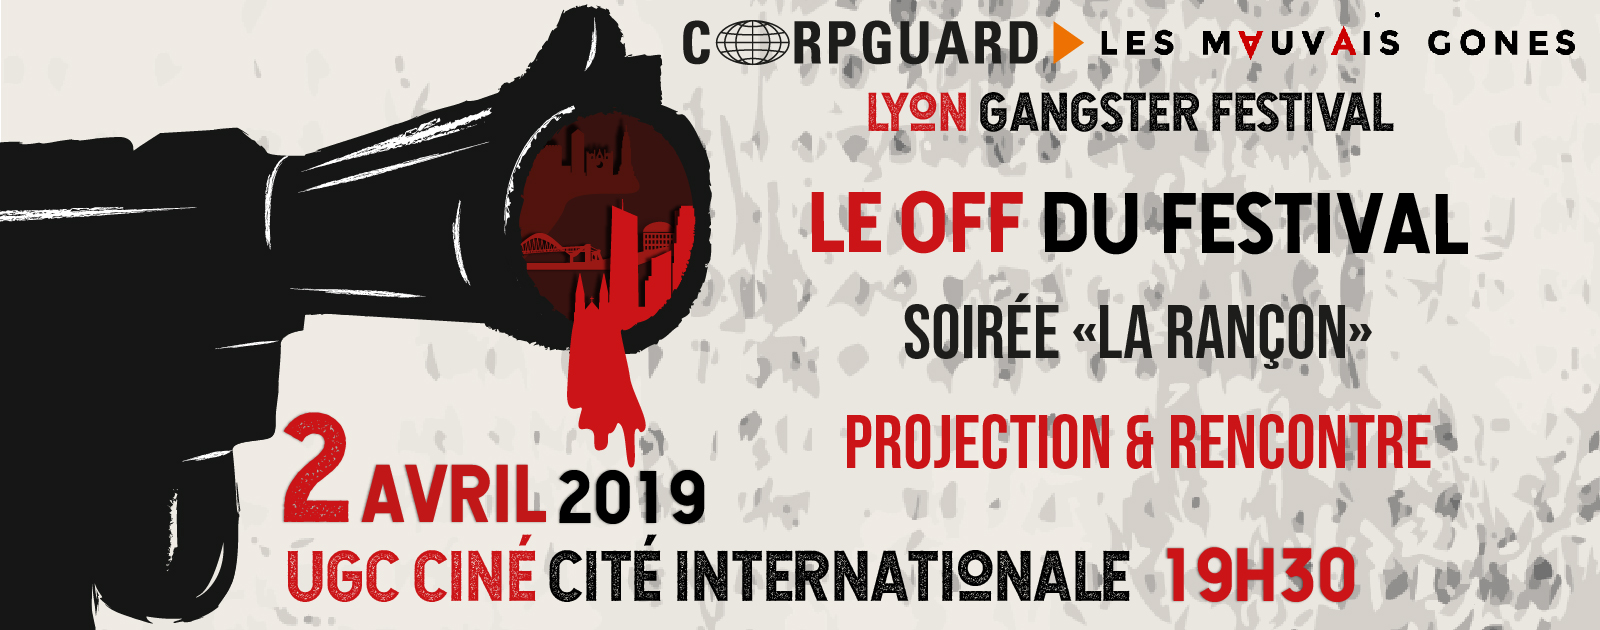 Lyon Gangster festival : Le "OFF" du festival au profit des veuves, des orphelins et des blessés de guerre - 2 avril UGC CITE INTERNATIONALE